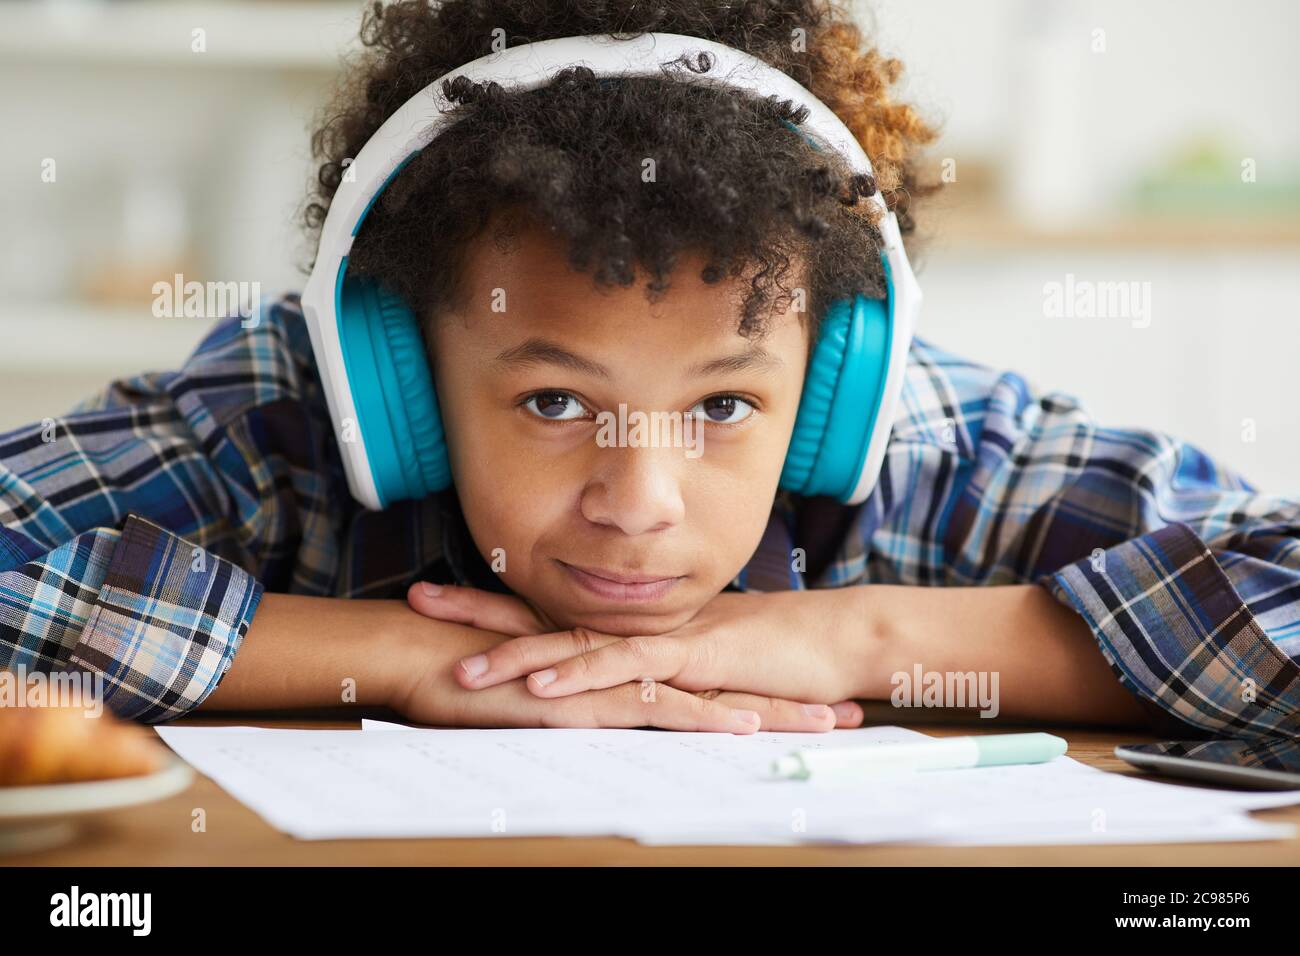 Nahaufnahme eines afrikanischen Schuljungen mit lockigen Haaren in Kopfhörern, der die Kamera anschaut, während er am Tisch sitzt und studiert Stockfoto